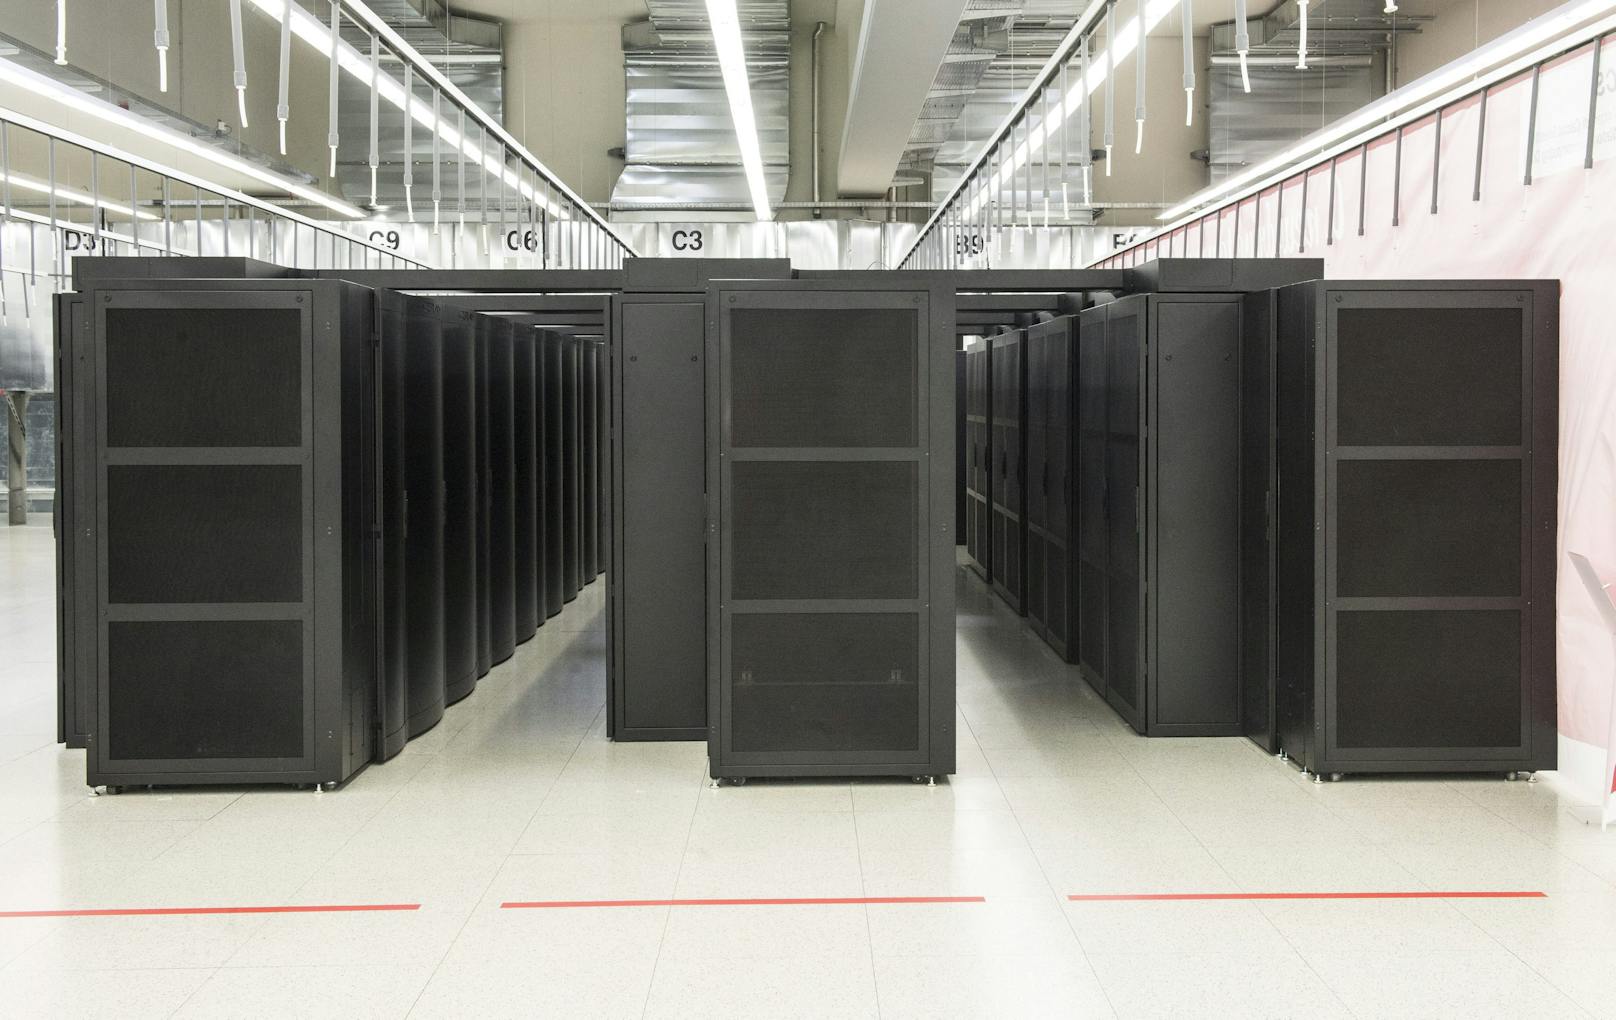 Das CSCS betreibt unter anderem den Piz Daint. Der Supercomputer ist derzeit auf Platz 6 der schnellsten Rechner der Welt.